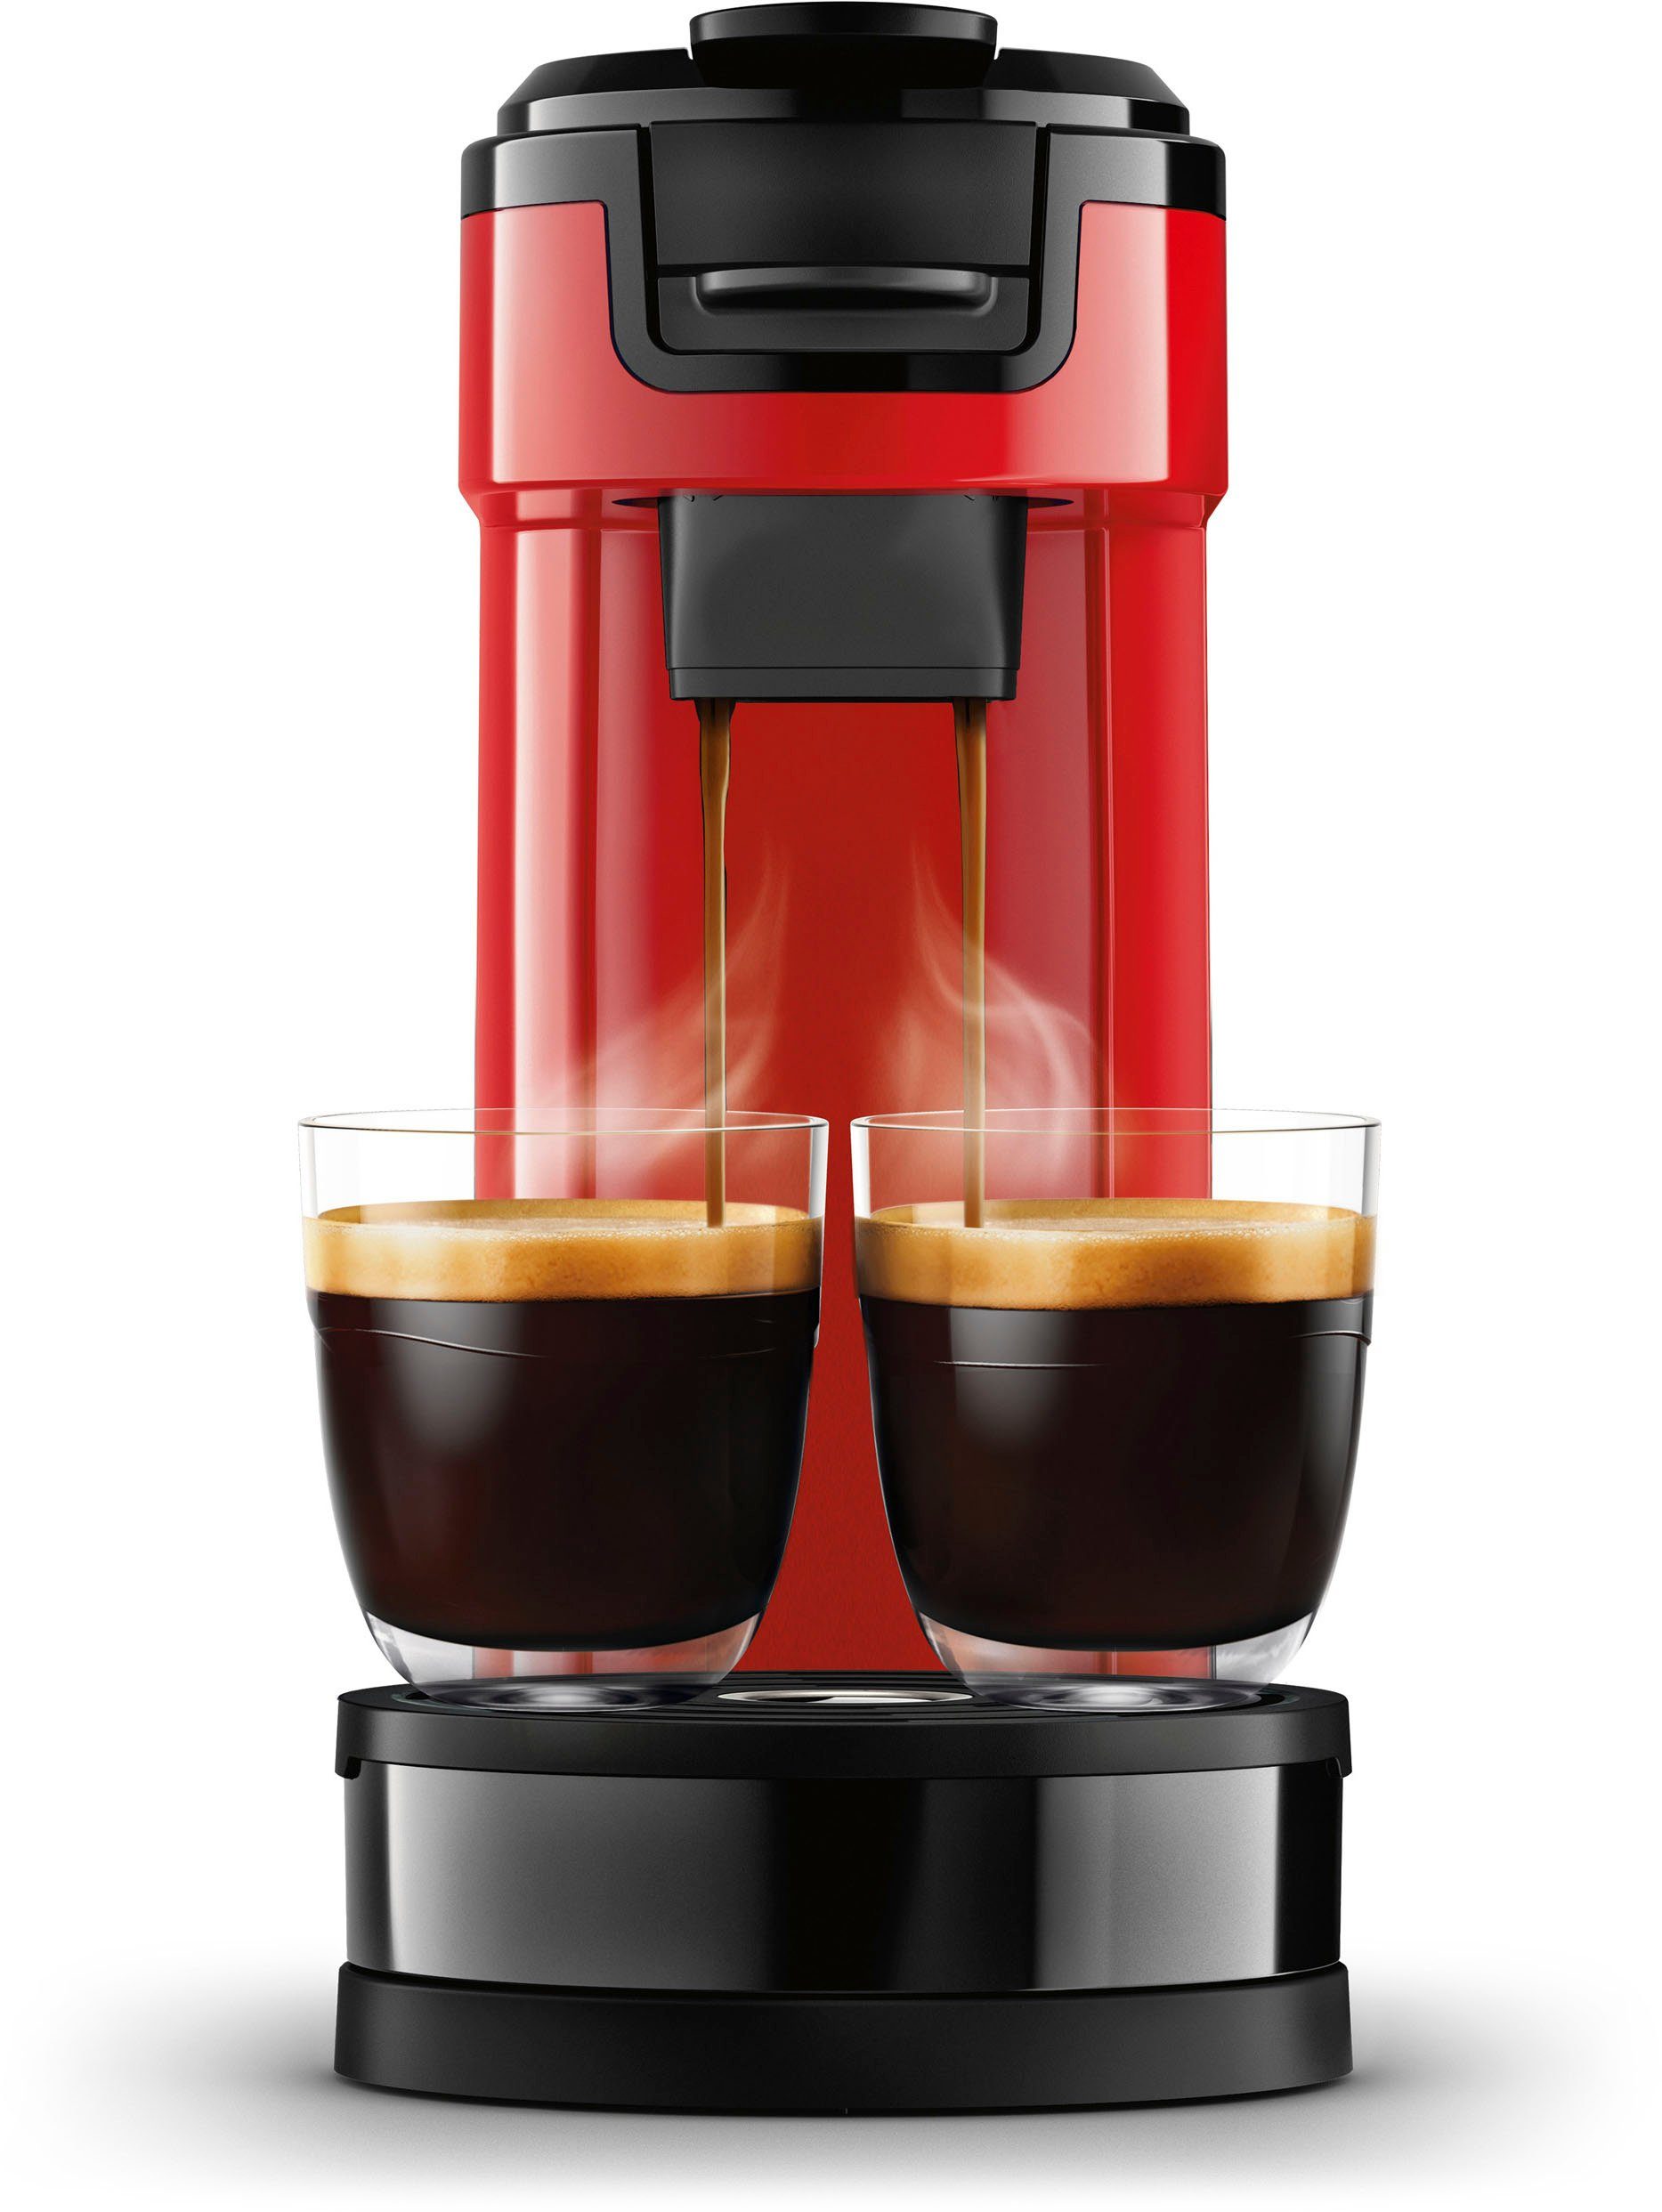 Philips Senseo Kaffeepadmaschine € HD6592/84, von Wert inkl. 9,90 im Kaffeepaddose UVP Kaffeekanne, 1l Switch